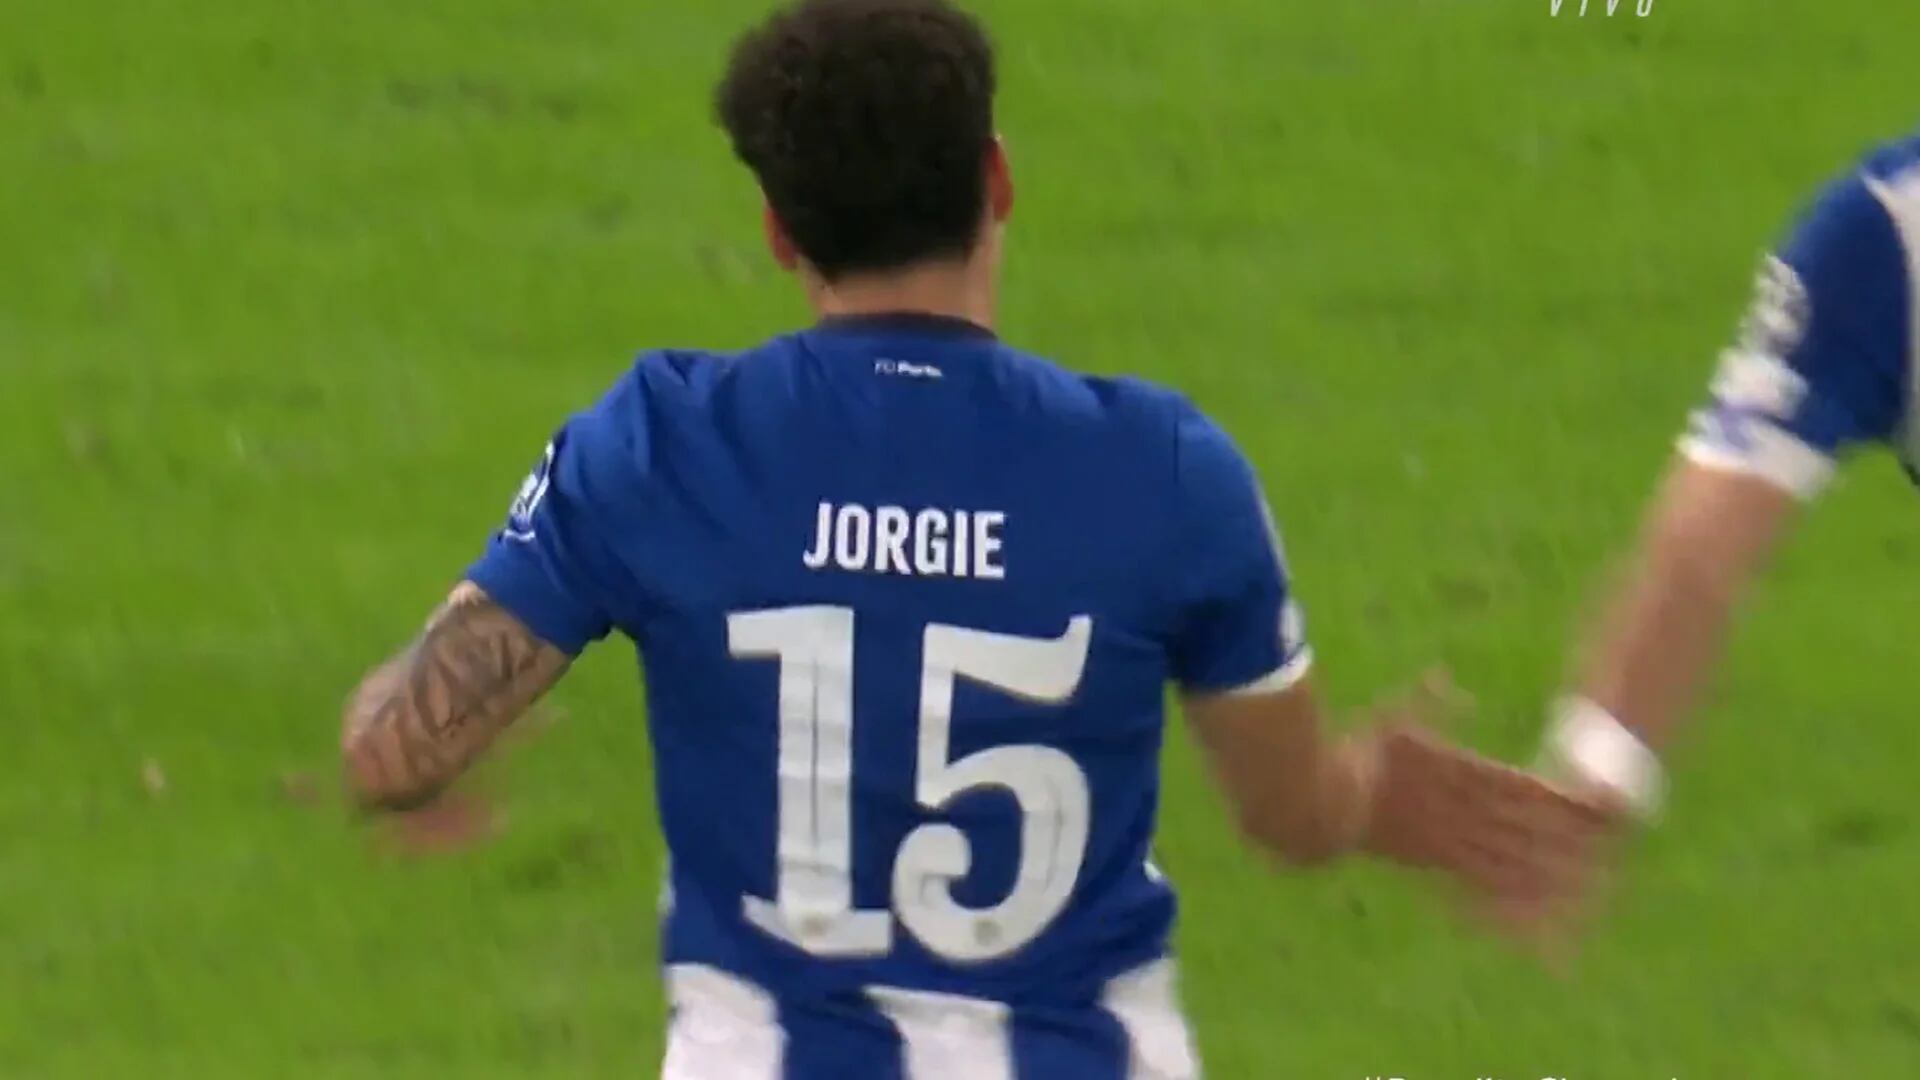 Jorge Sánchez llamó la atención en su ingreso en el duelo de Champions League debido al nombre que portaba "Jorgie".
Captura:
TNT Sports